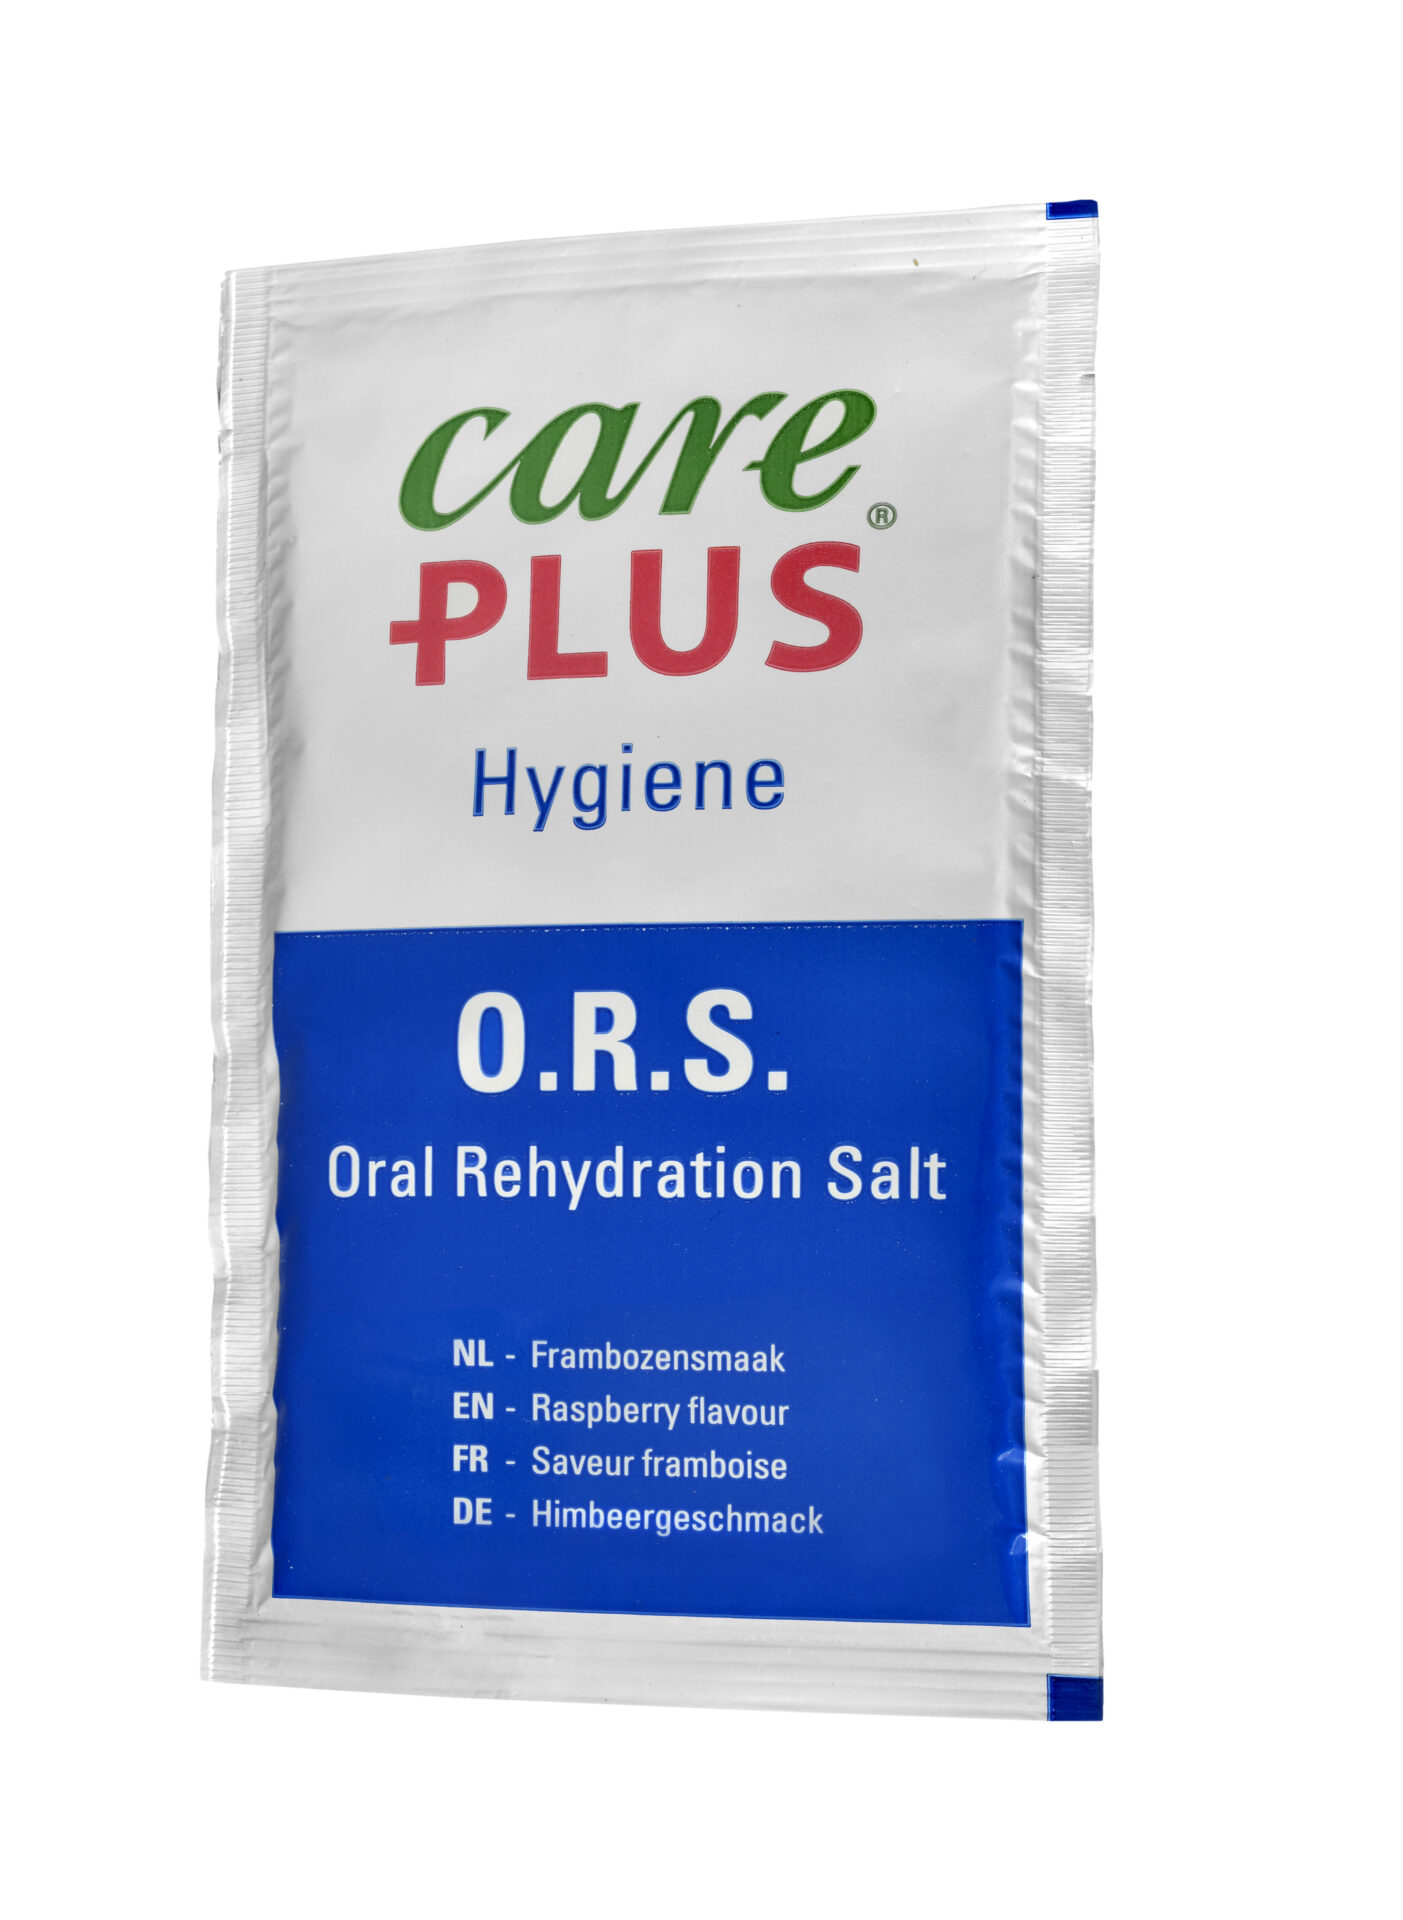 Care Plus ORS gegen Austrocknung in den Geschmacksrichtungen Granatapfel und Orange im praktischen Beutel.